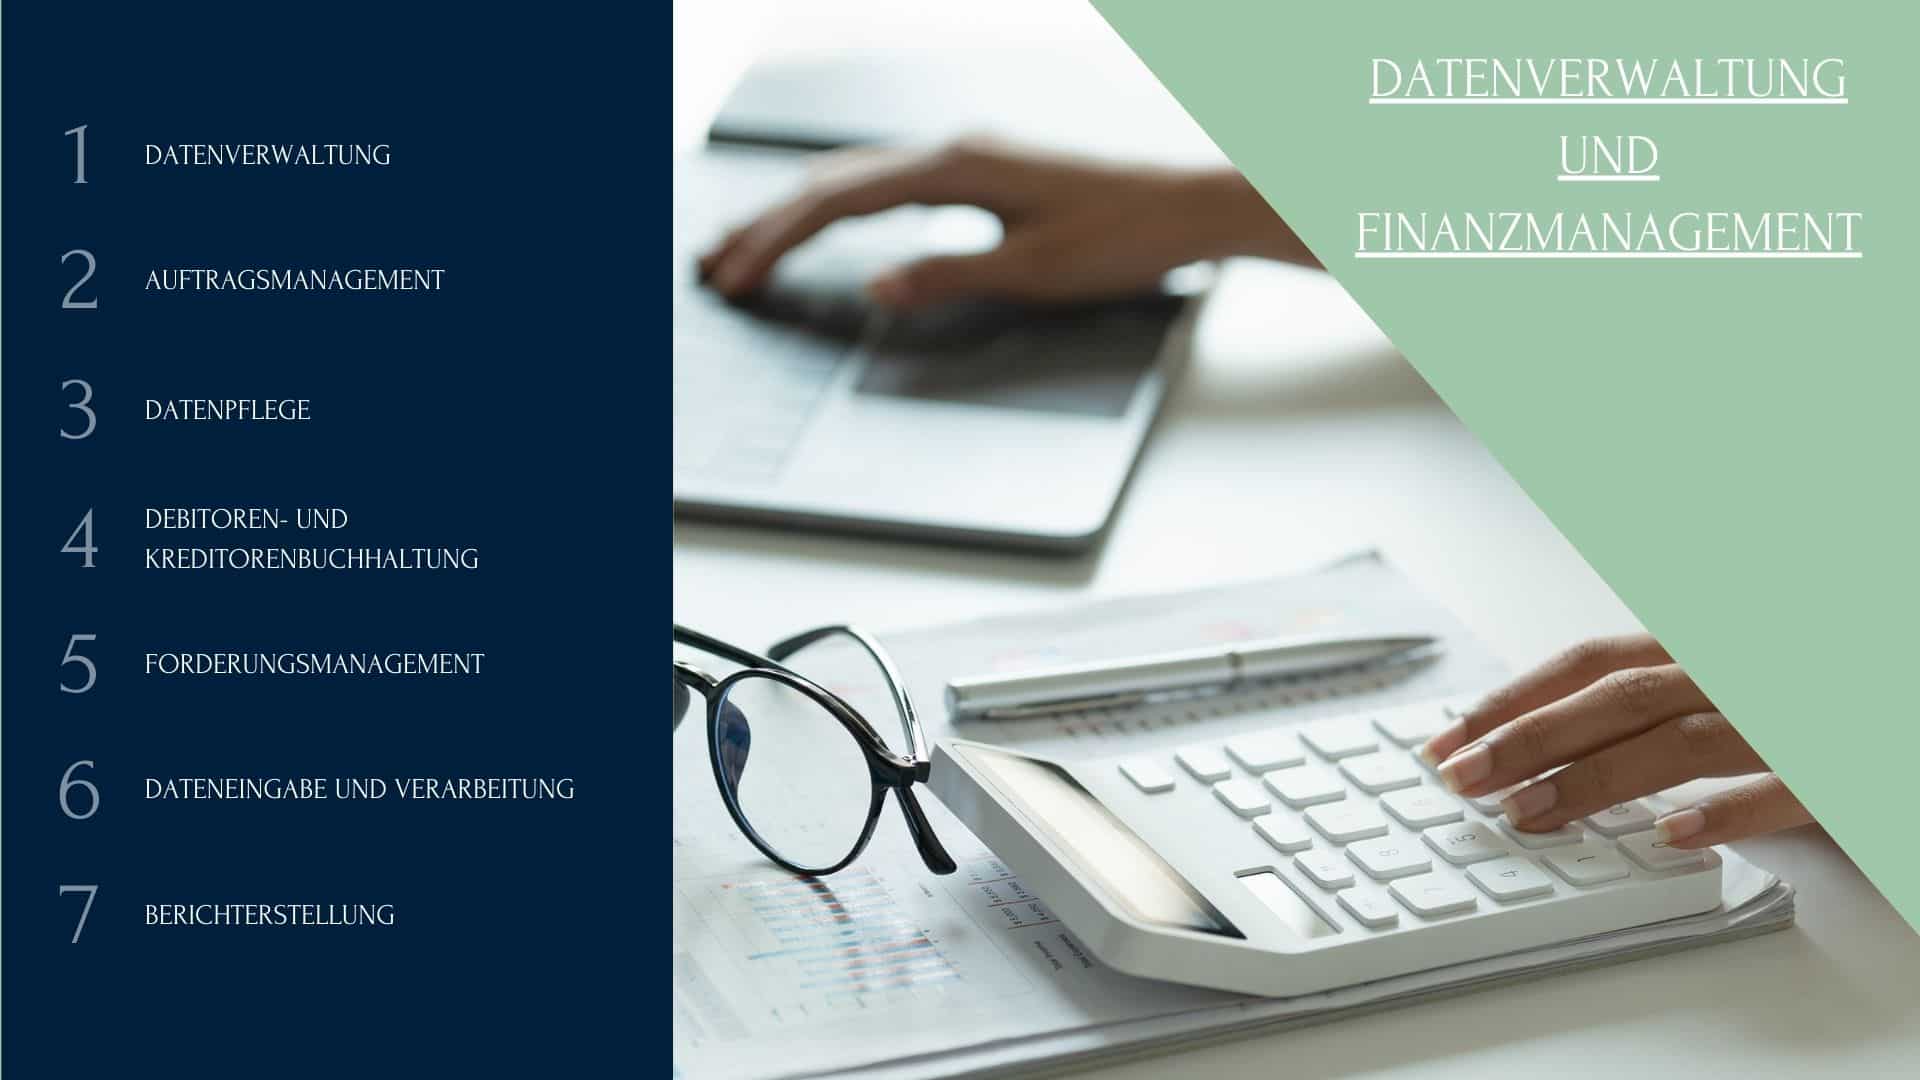 Datenverwaltung und Finanzmanagement